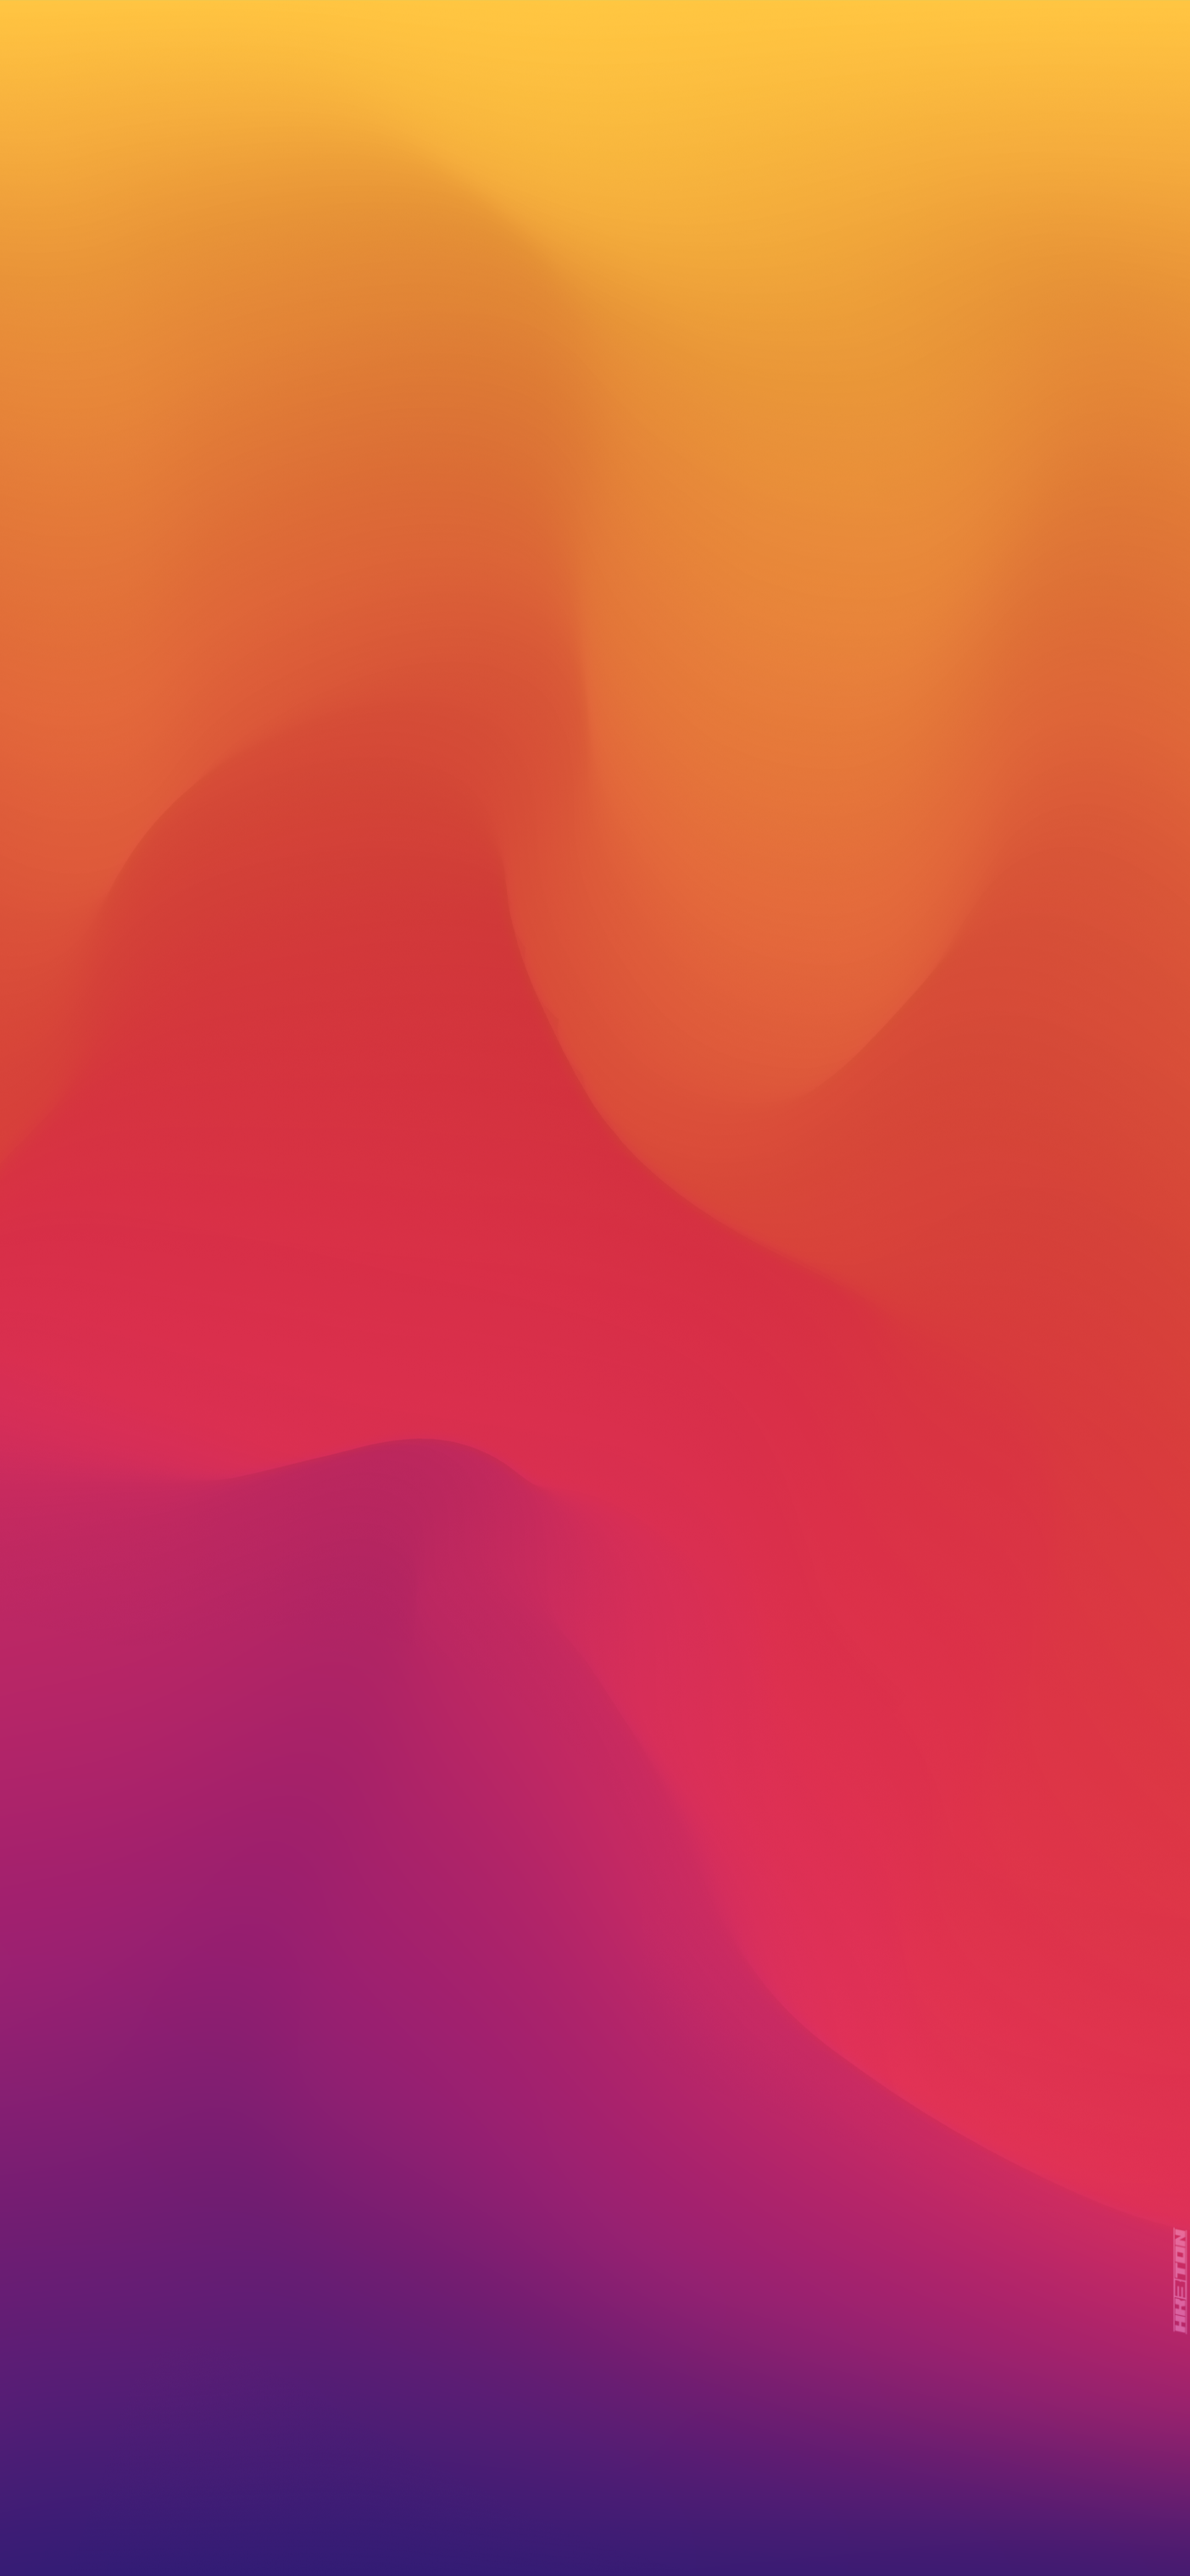 Hình nền iOS 1602 màu cam và tím gradient sẽ làm cho màn hình điện thoại của bạn thêm sống động và tươi sáng. Hãy xem ngay hình ảnh liên quan và cùng khám phá cảm giác ngọt ngào và tràn đầy năng lượng với màu sắc đầy màu sắc này.